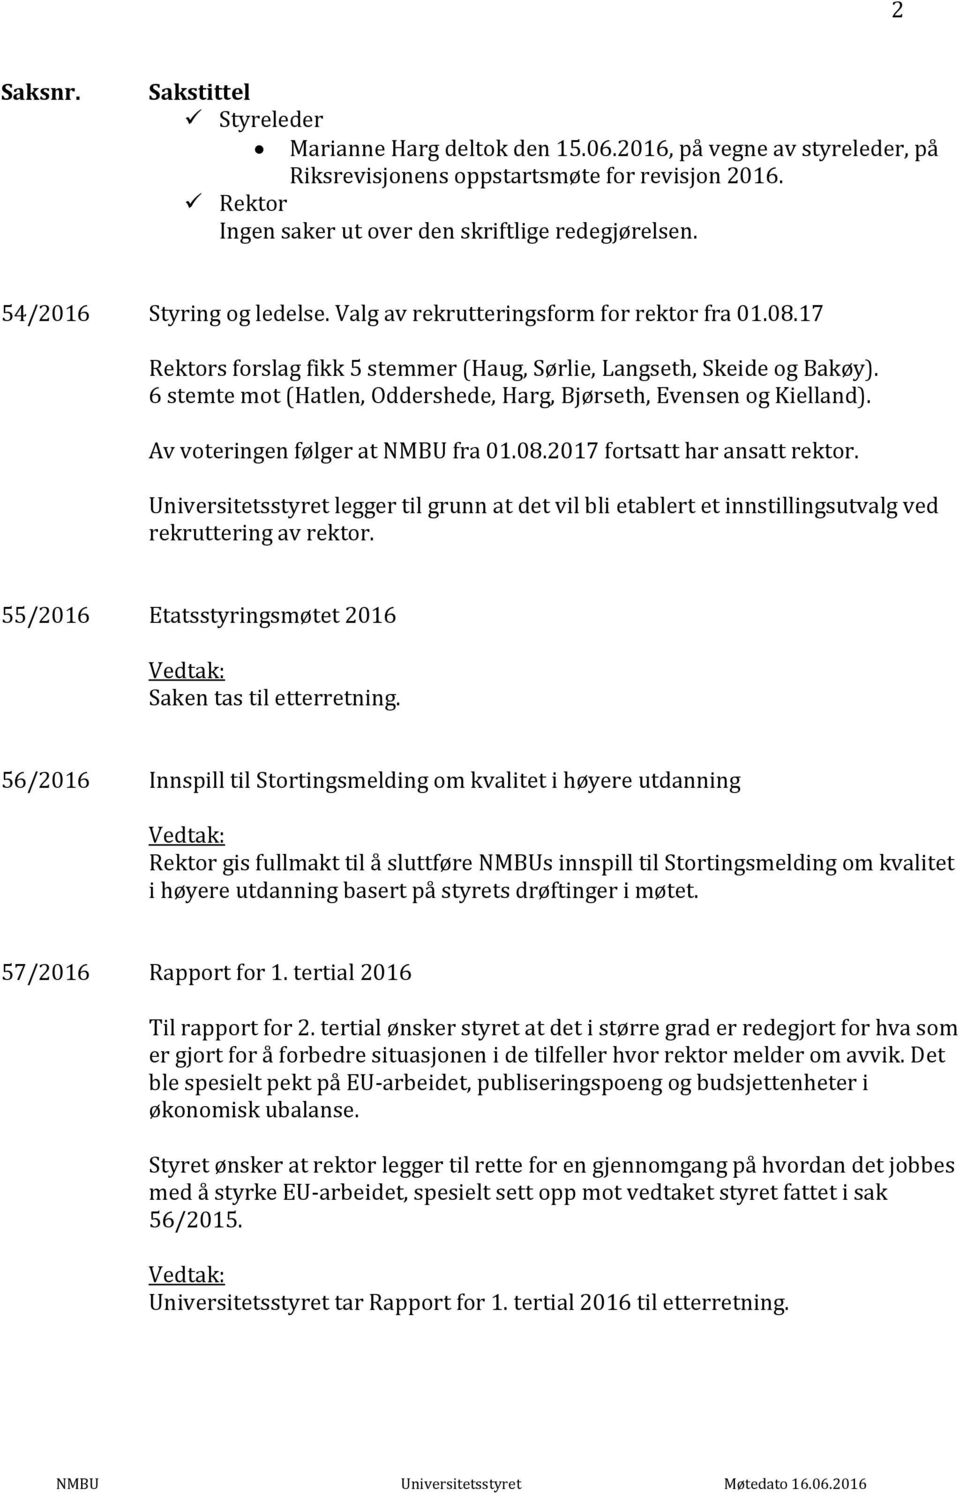 6 stemte mot (Hatlen, Oddershede, Harg, Bjørseth, Evensen og Kielland). Av voteringen følger at NMBU fra 01.08.2017 fortsatt har ansatt rektor.